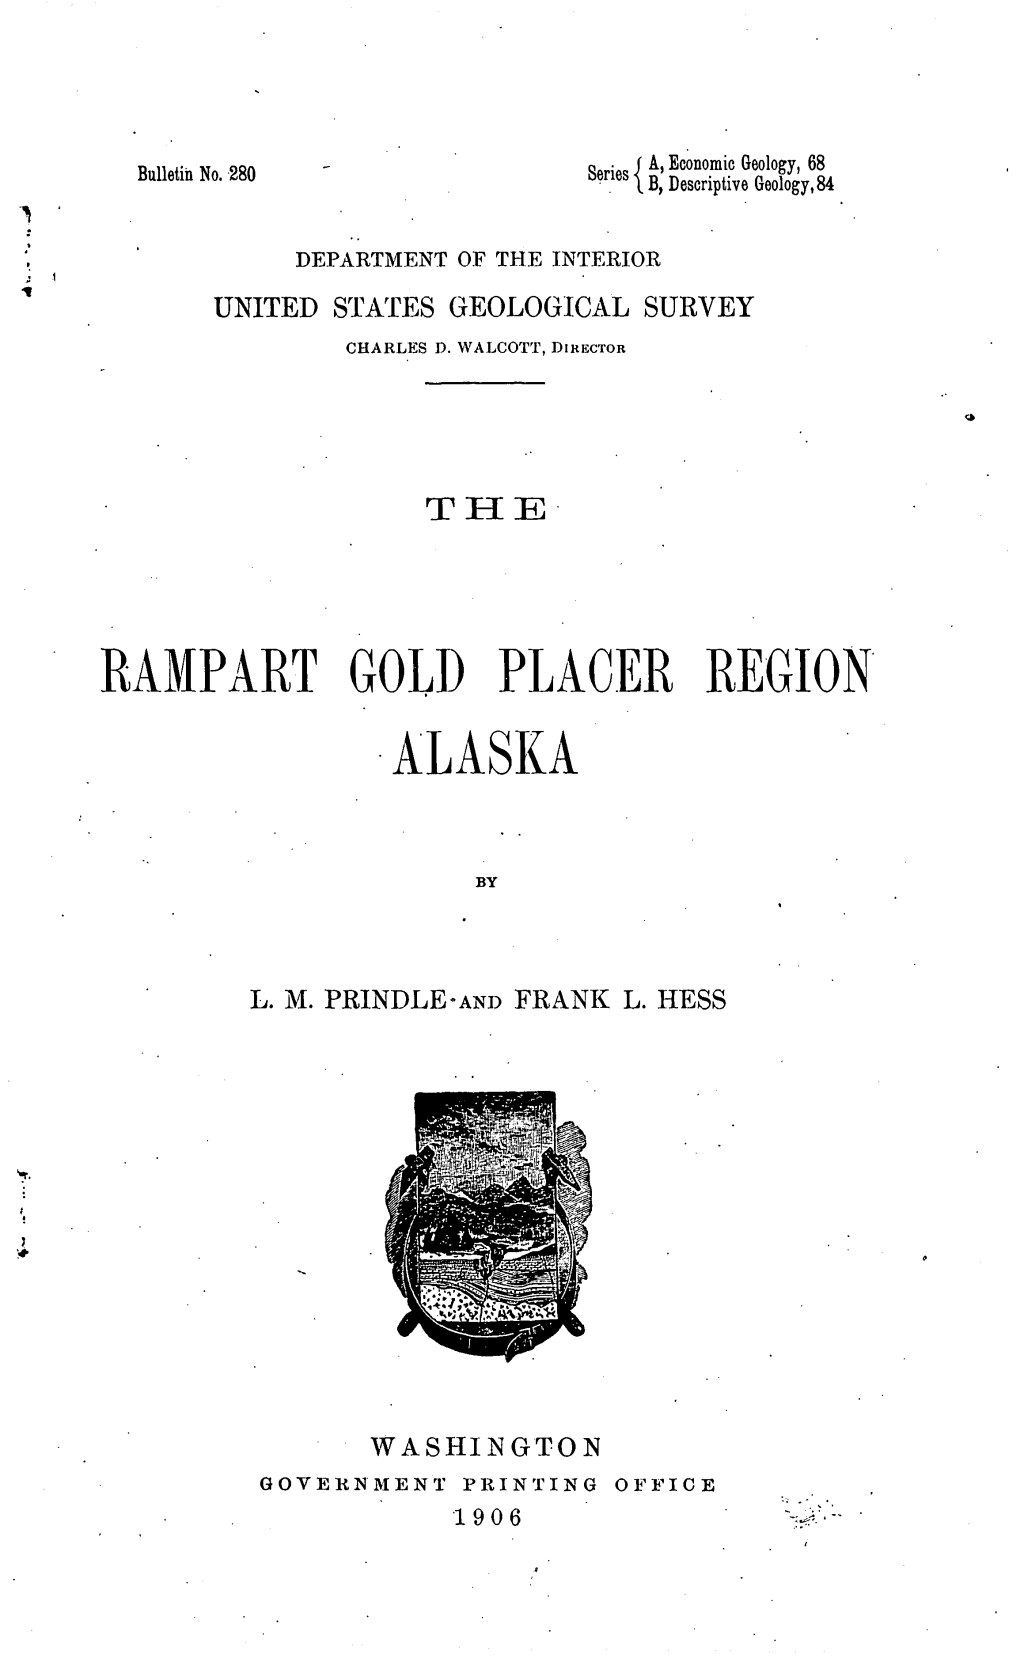 Rampart Gold Placer Region Alaska